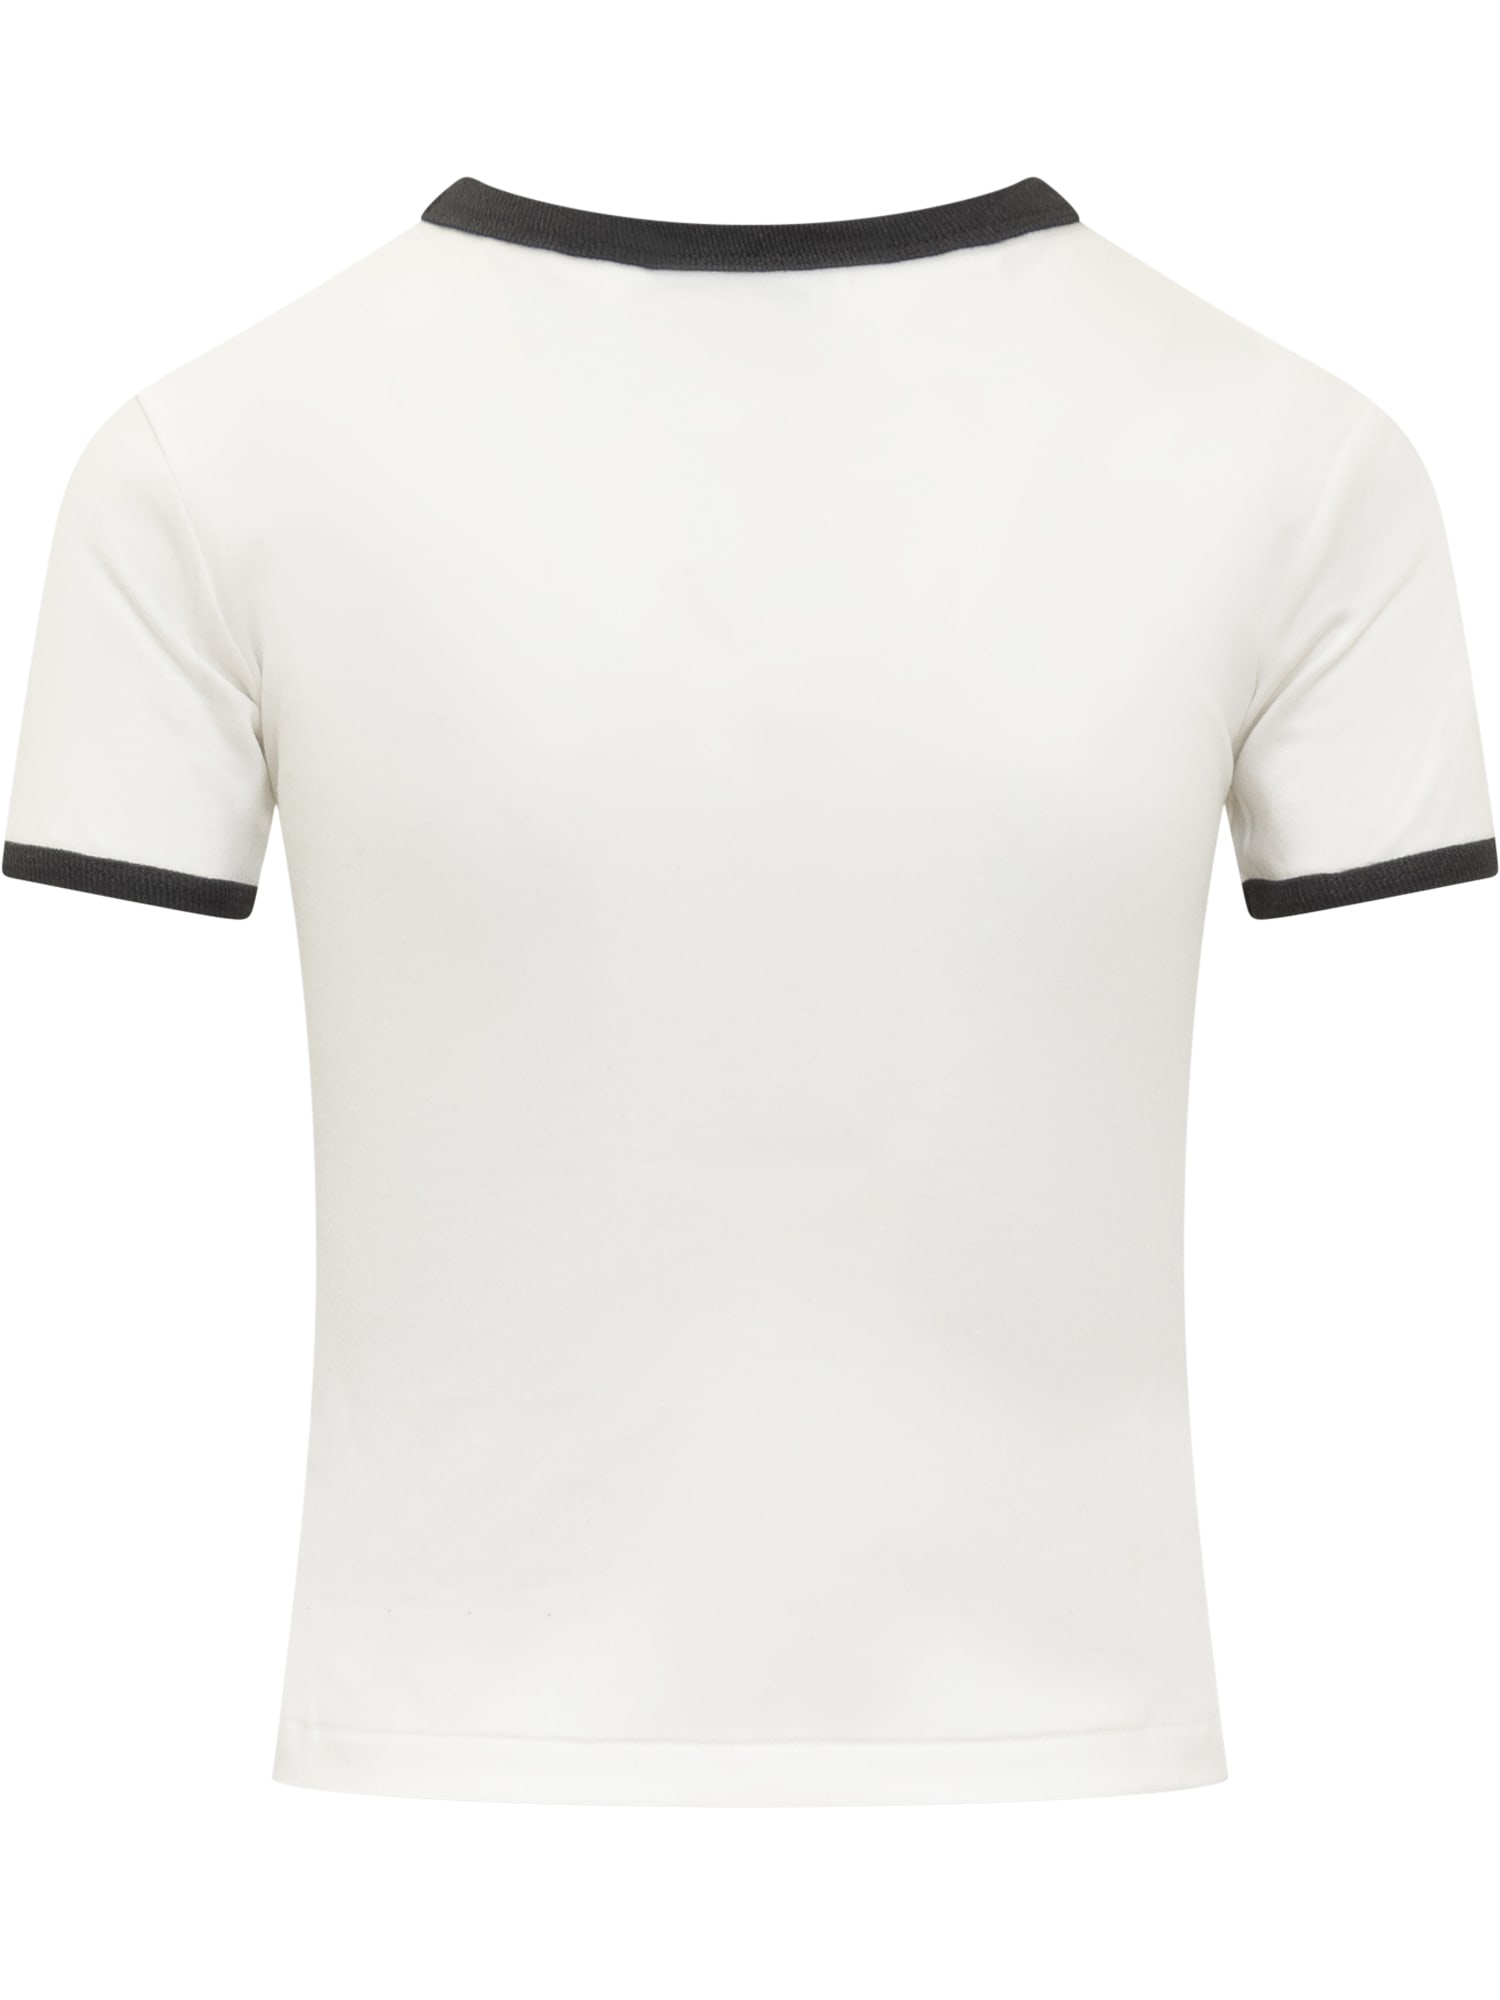 Shop Ambush Graphic T-shirt In White Black